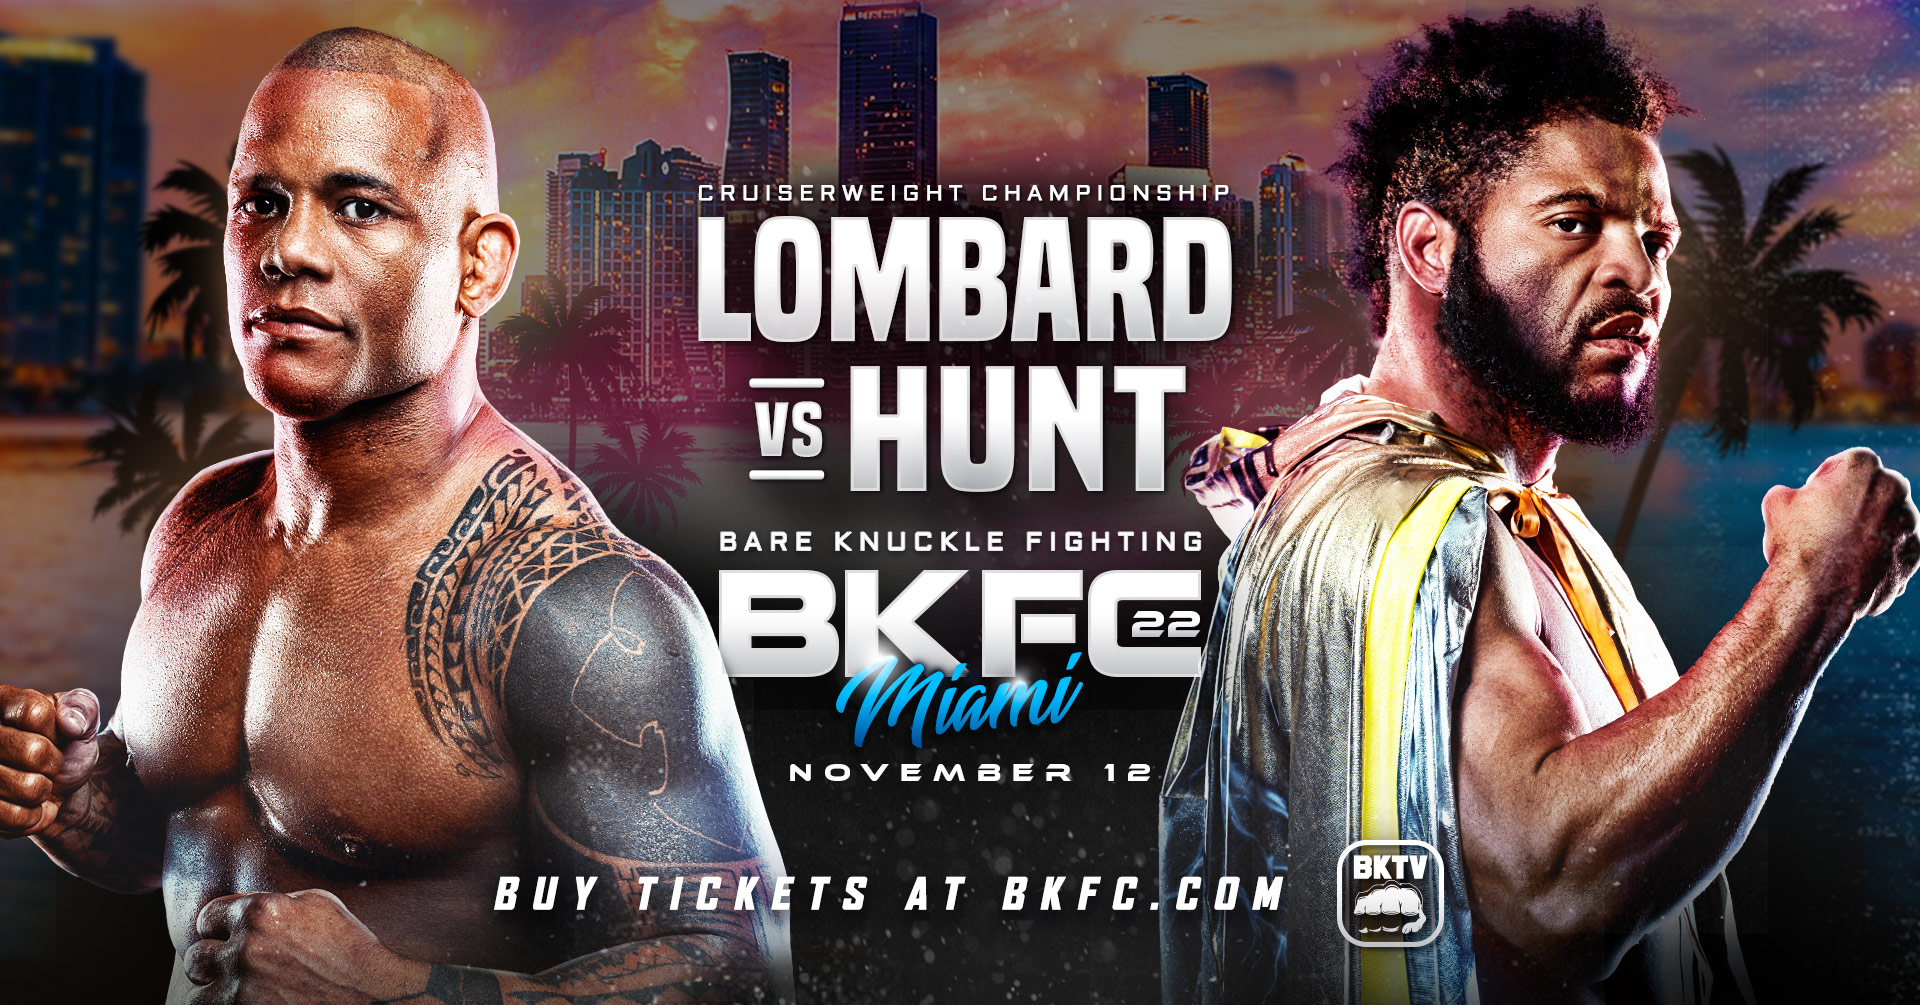 BKFC 22 - Lombard vs Hunt